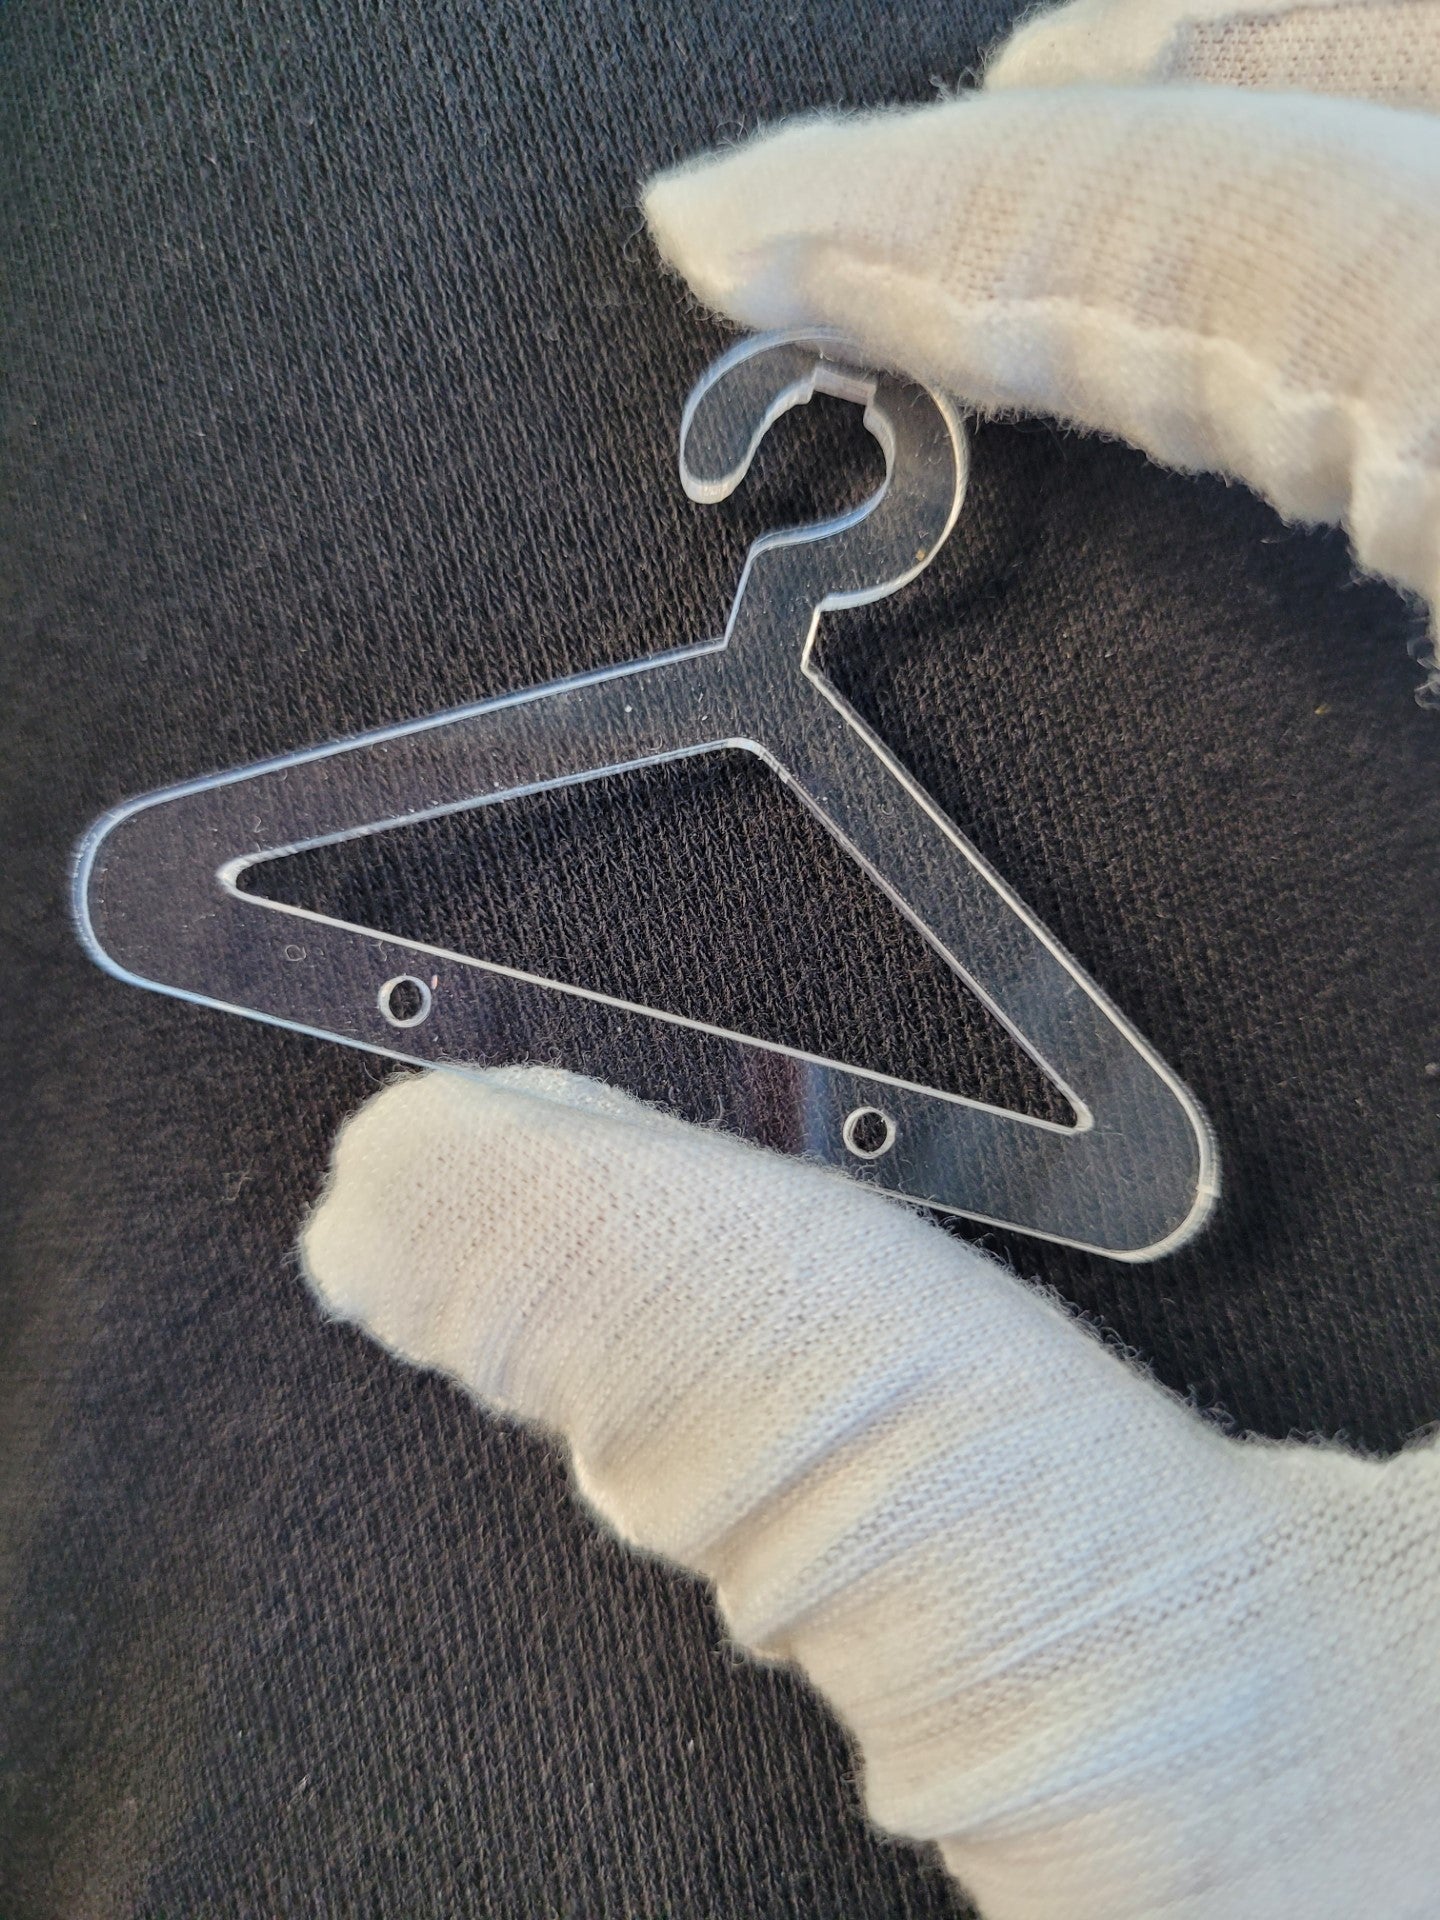 Earring rack with hangers